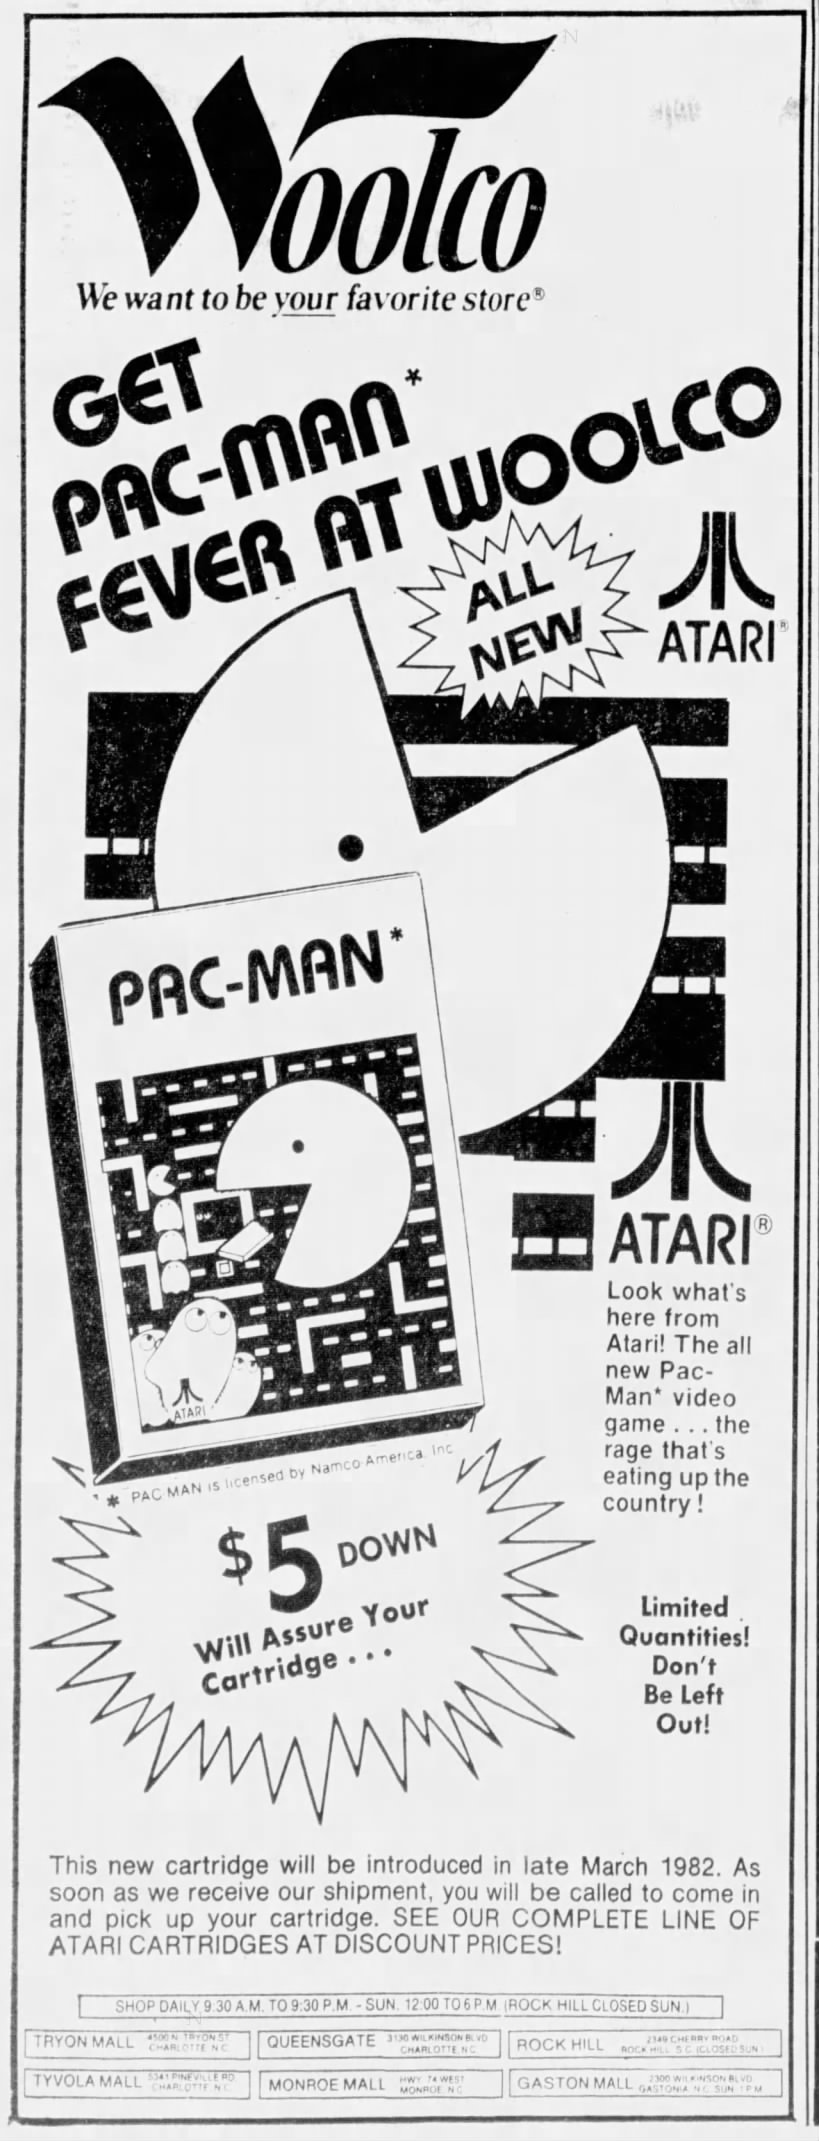 Atari 2600: Woolco (Feb 26, 82)